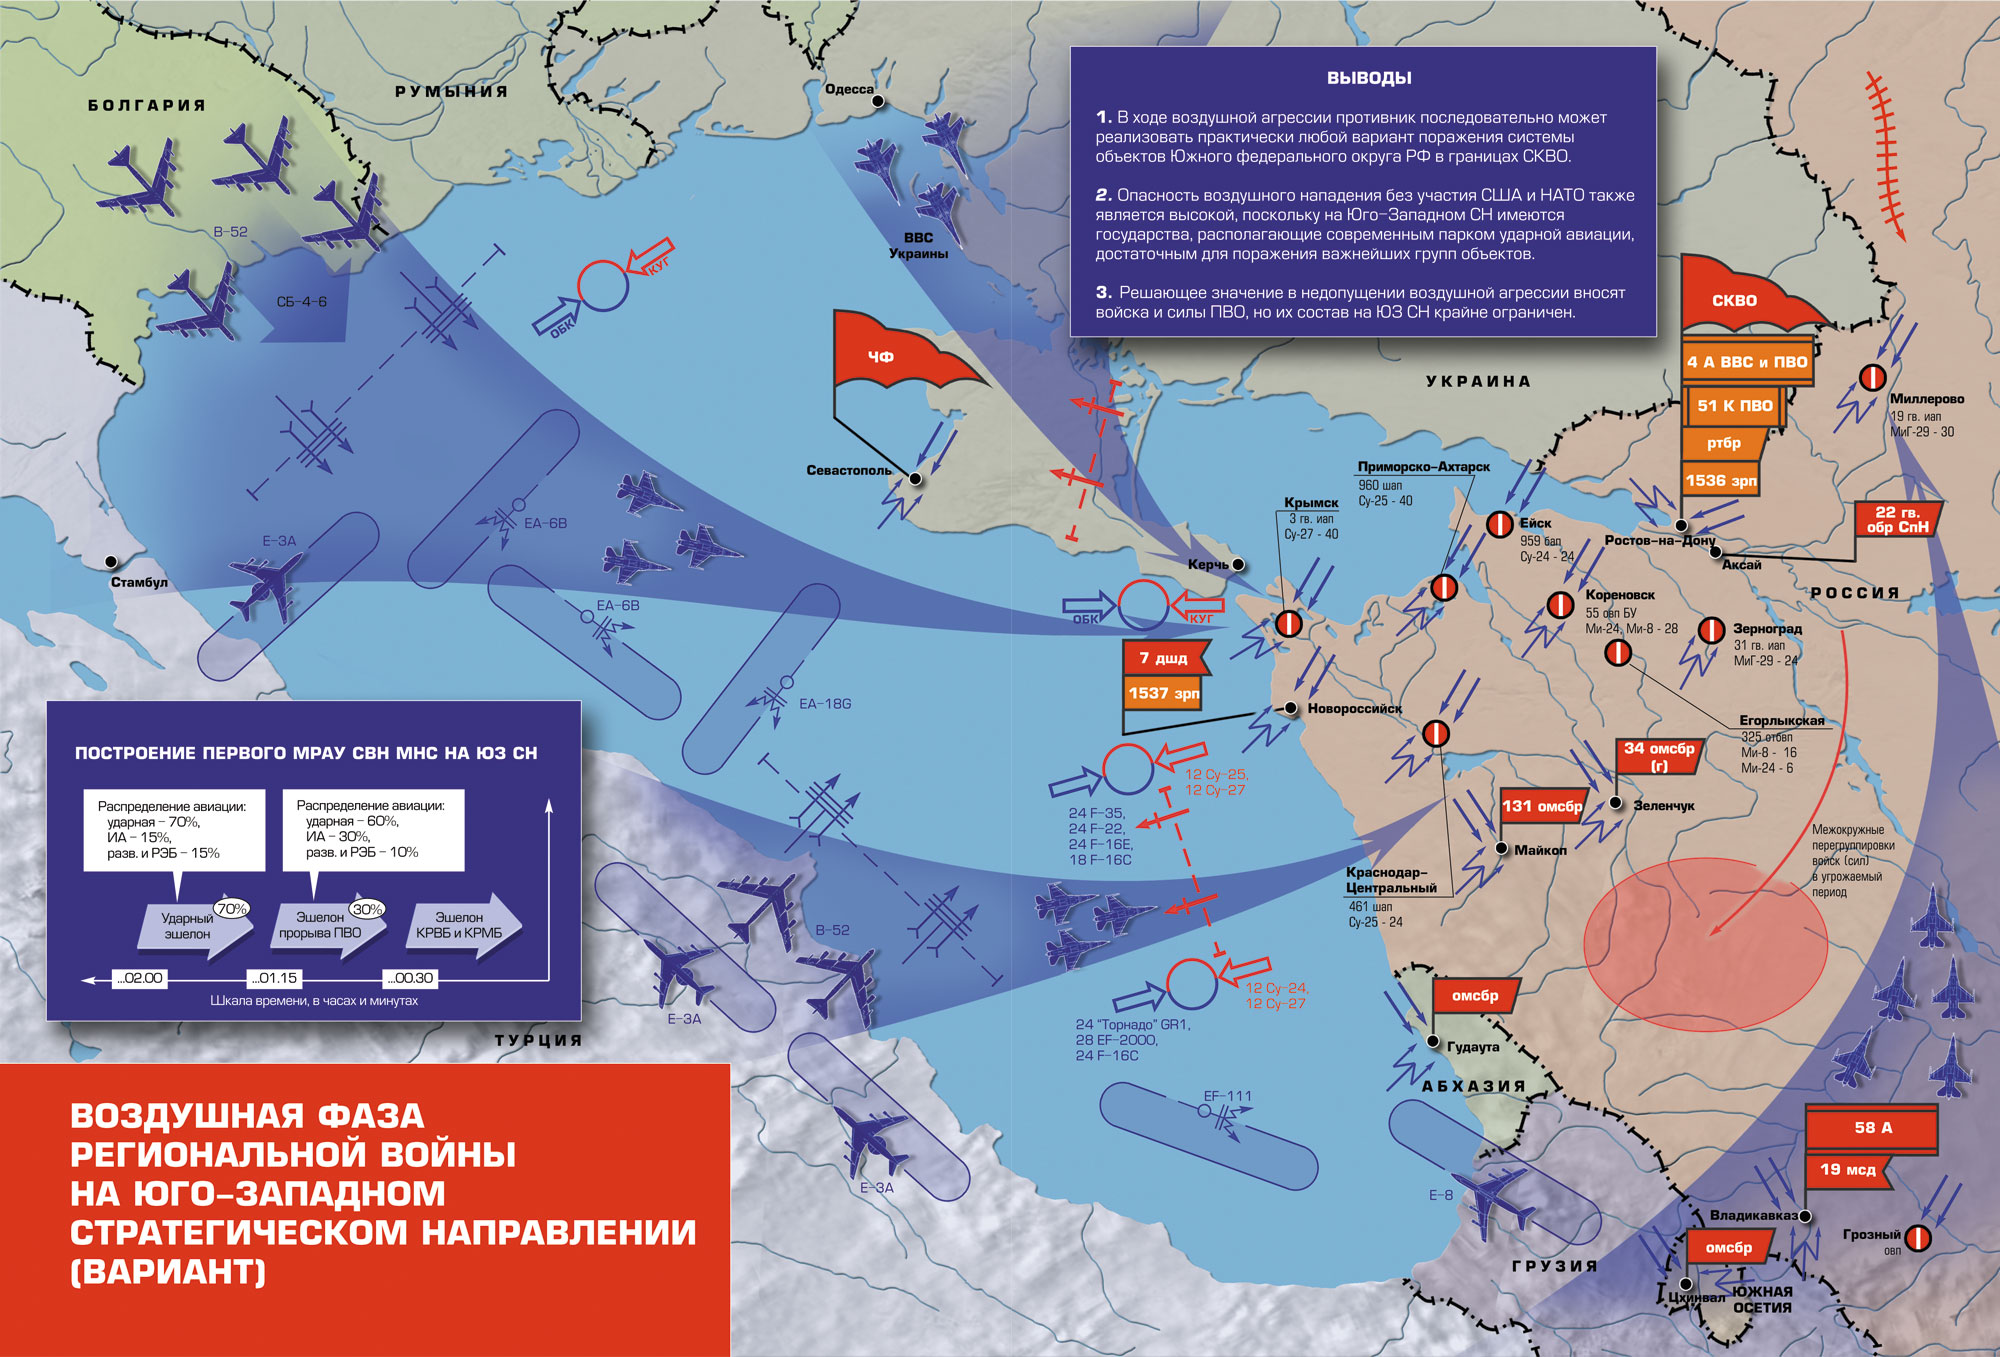 Военно воздушная операция. ПВО НАТО на карте. Военные стратегические направления. Юго-Западное стратегическое направление. Западное стратегическое направление России.